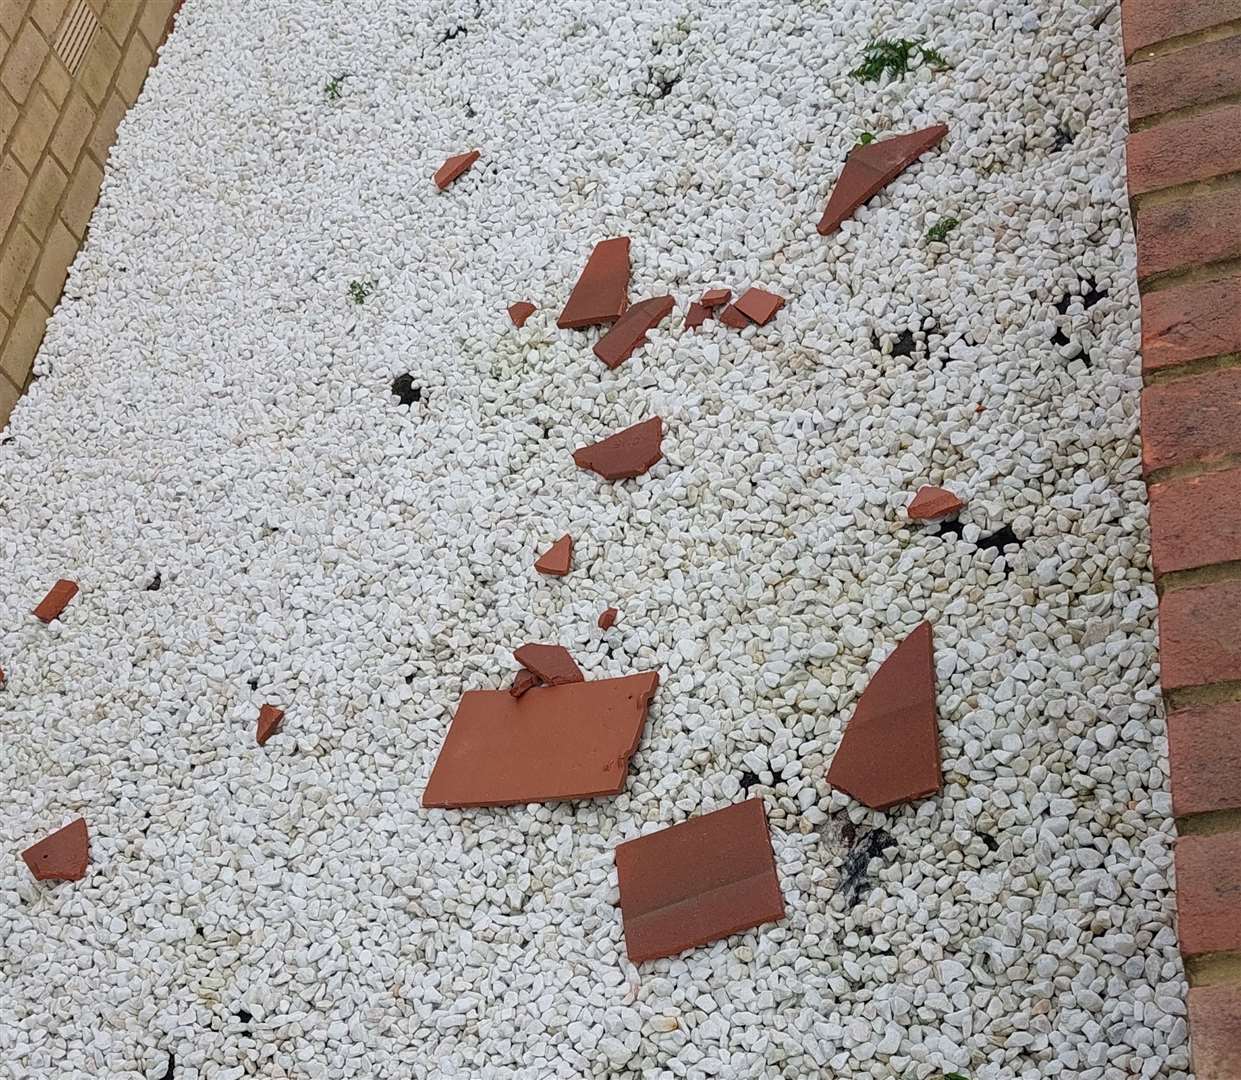 Broken tiles have fallen to the floor in Discovery Drive